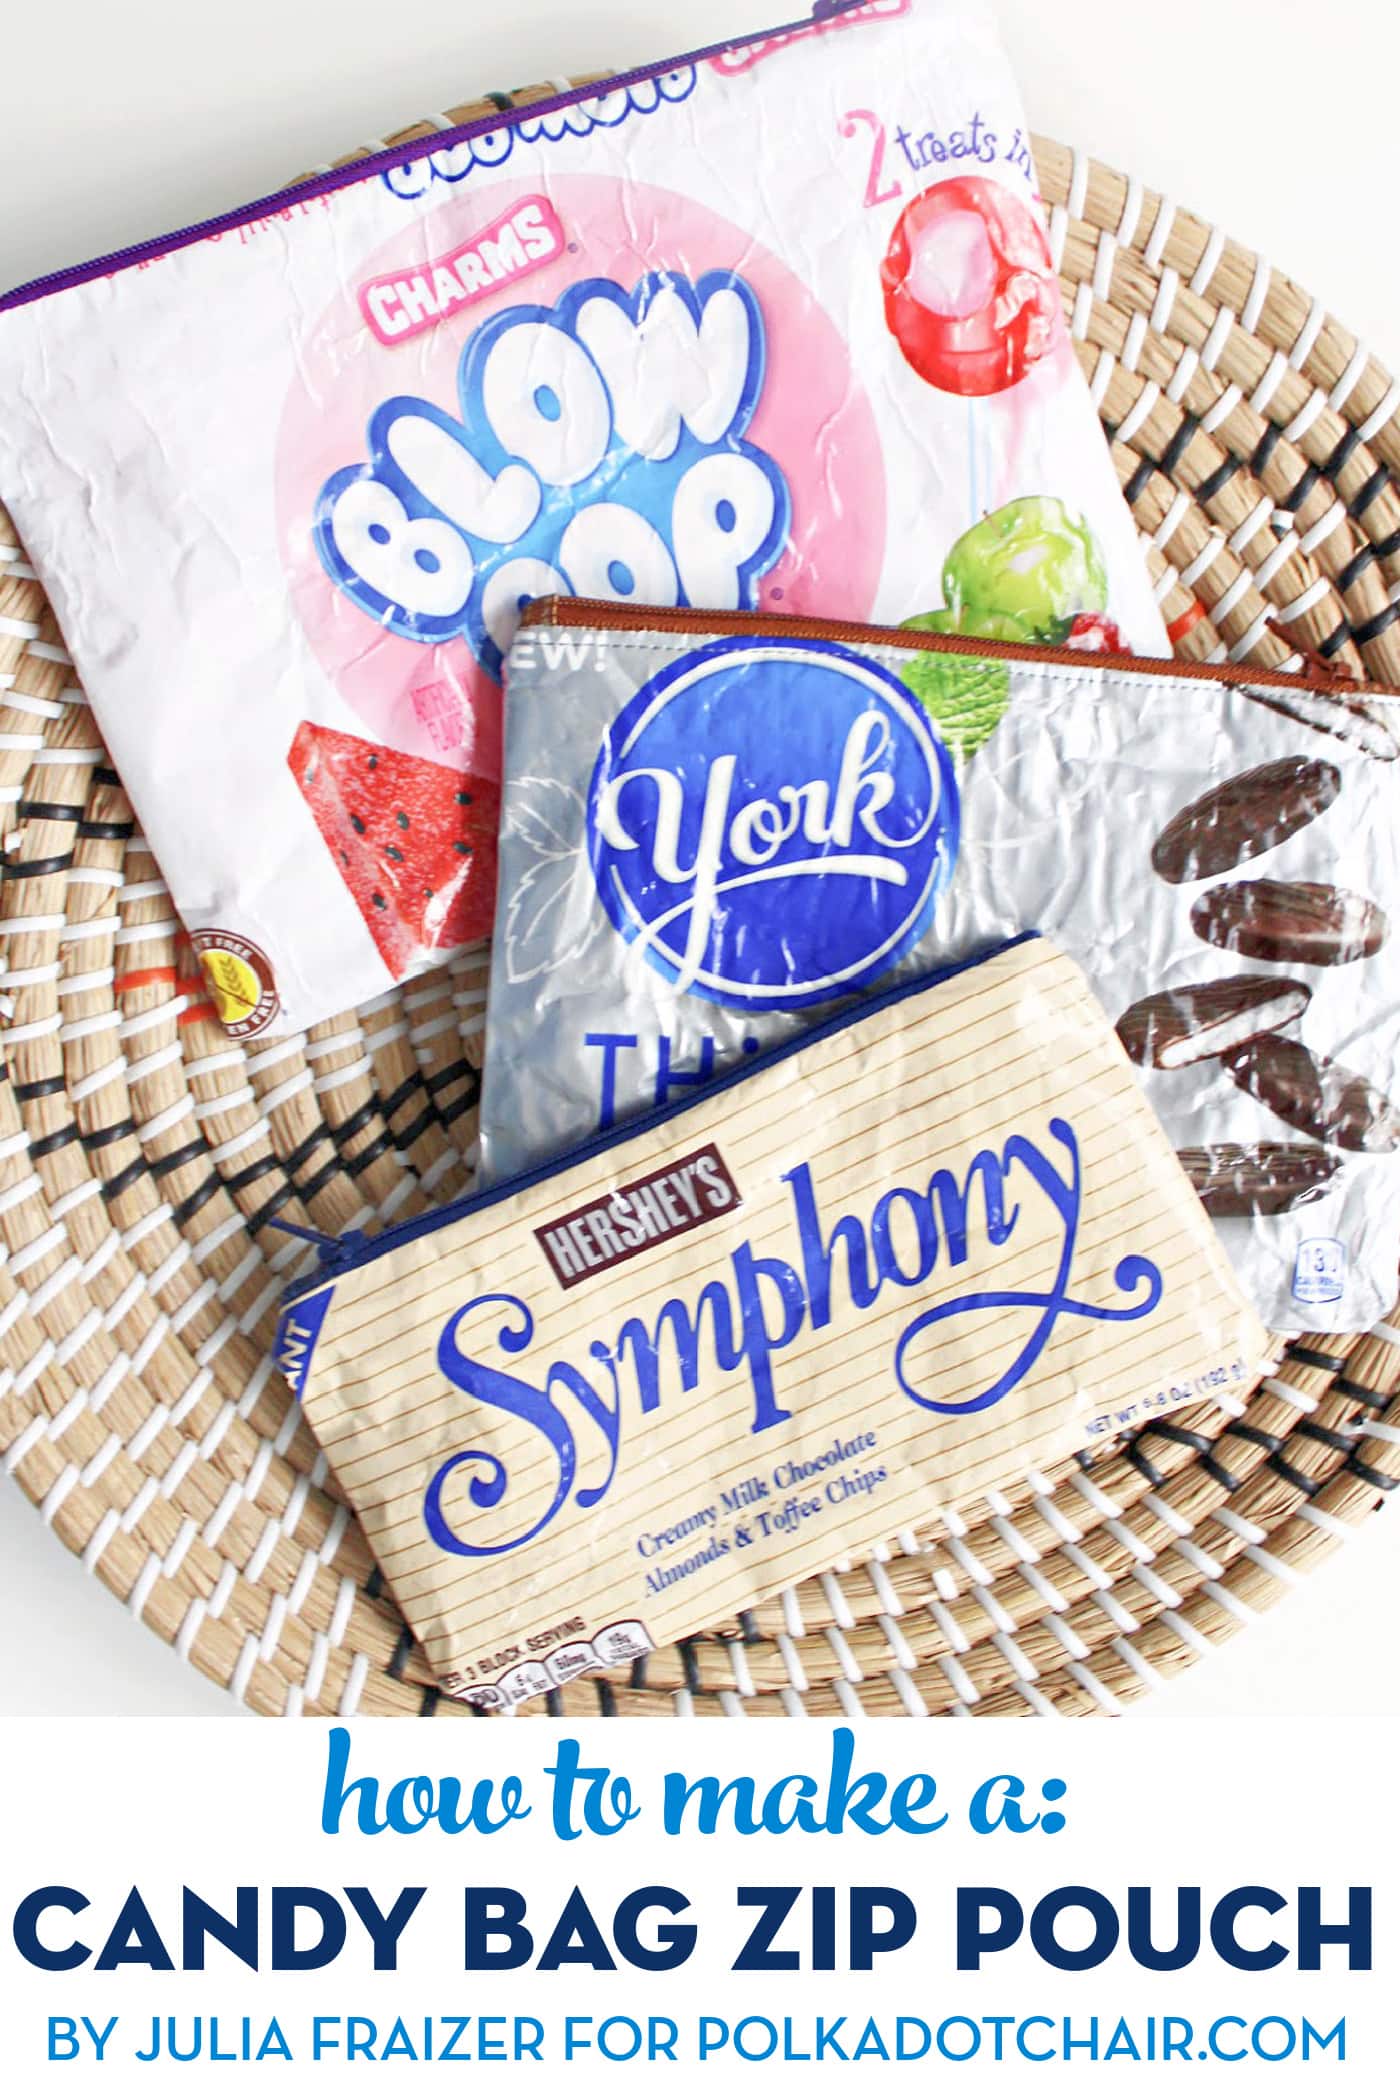 Paper Mosaic Clutch, Candy Wrapper Purse, Recycle Up-cycle Candy Wrapper  Purse Bag, Recycled Candy Wrapper Woven Handbag, Mosaic Paper Bag - Etsy